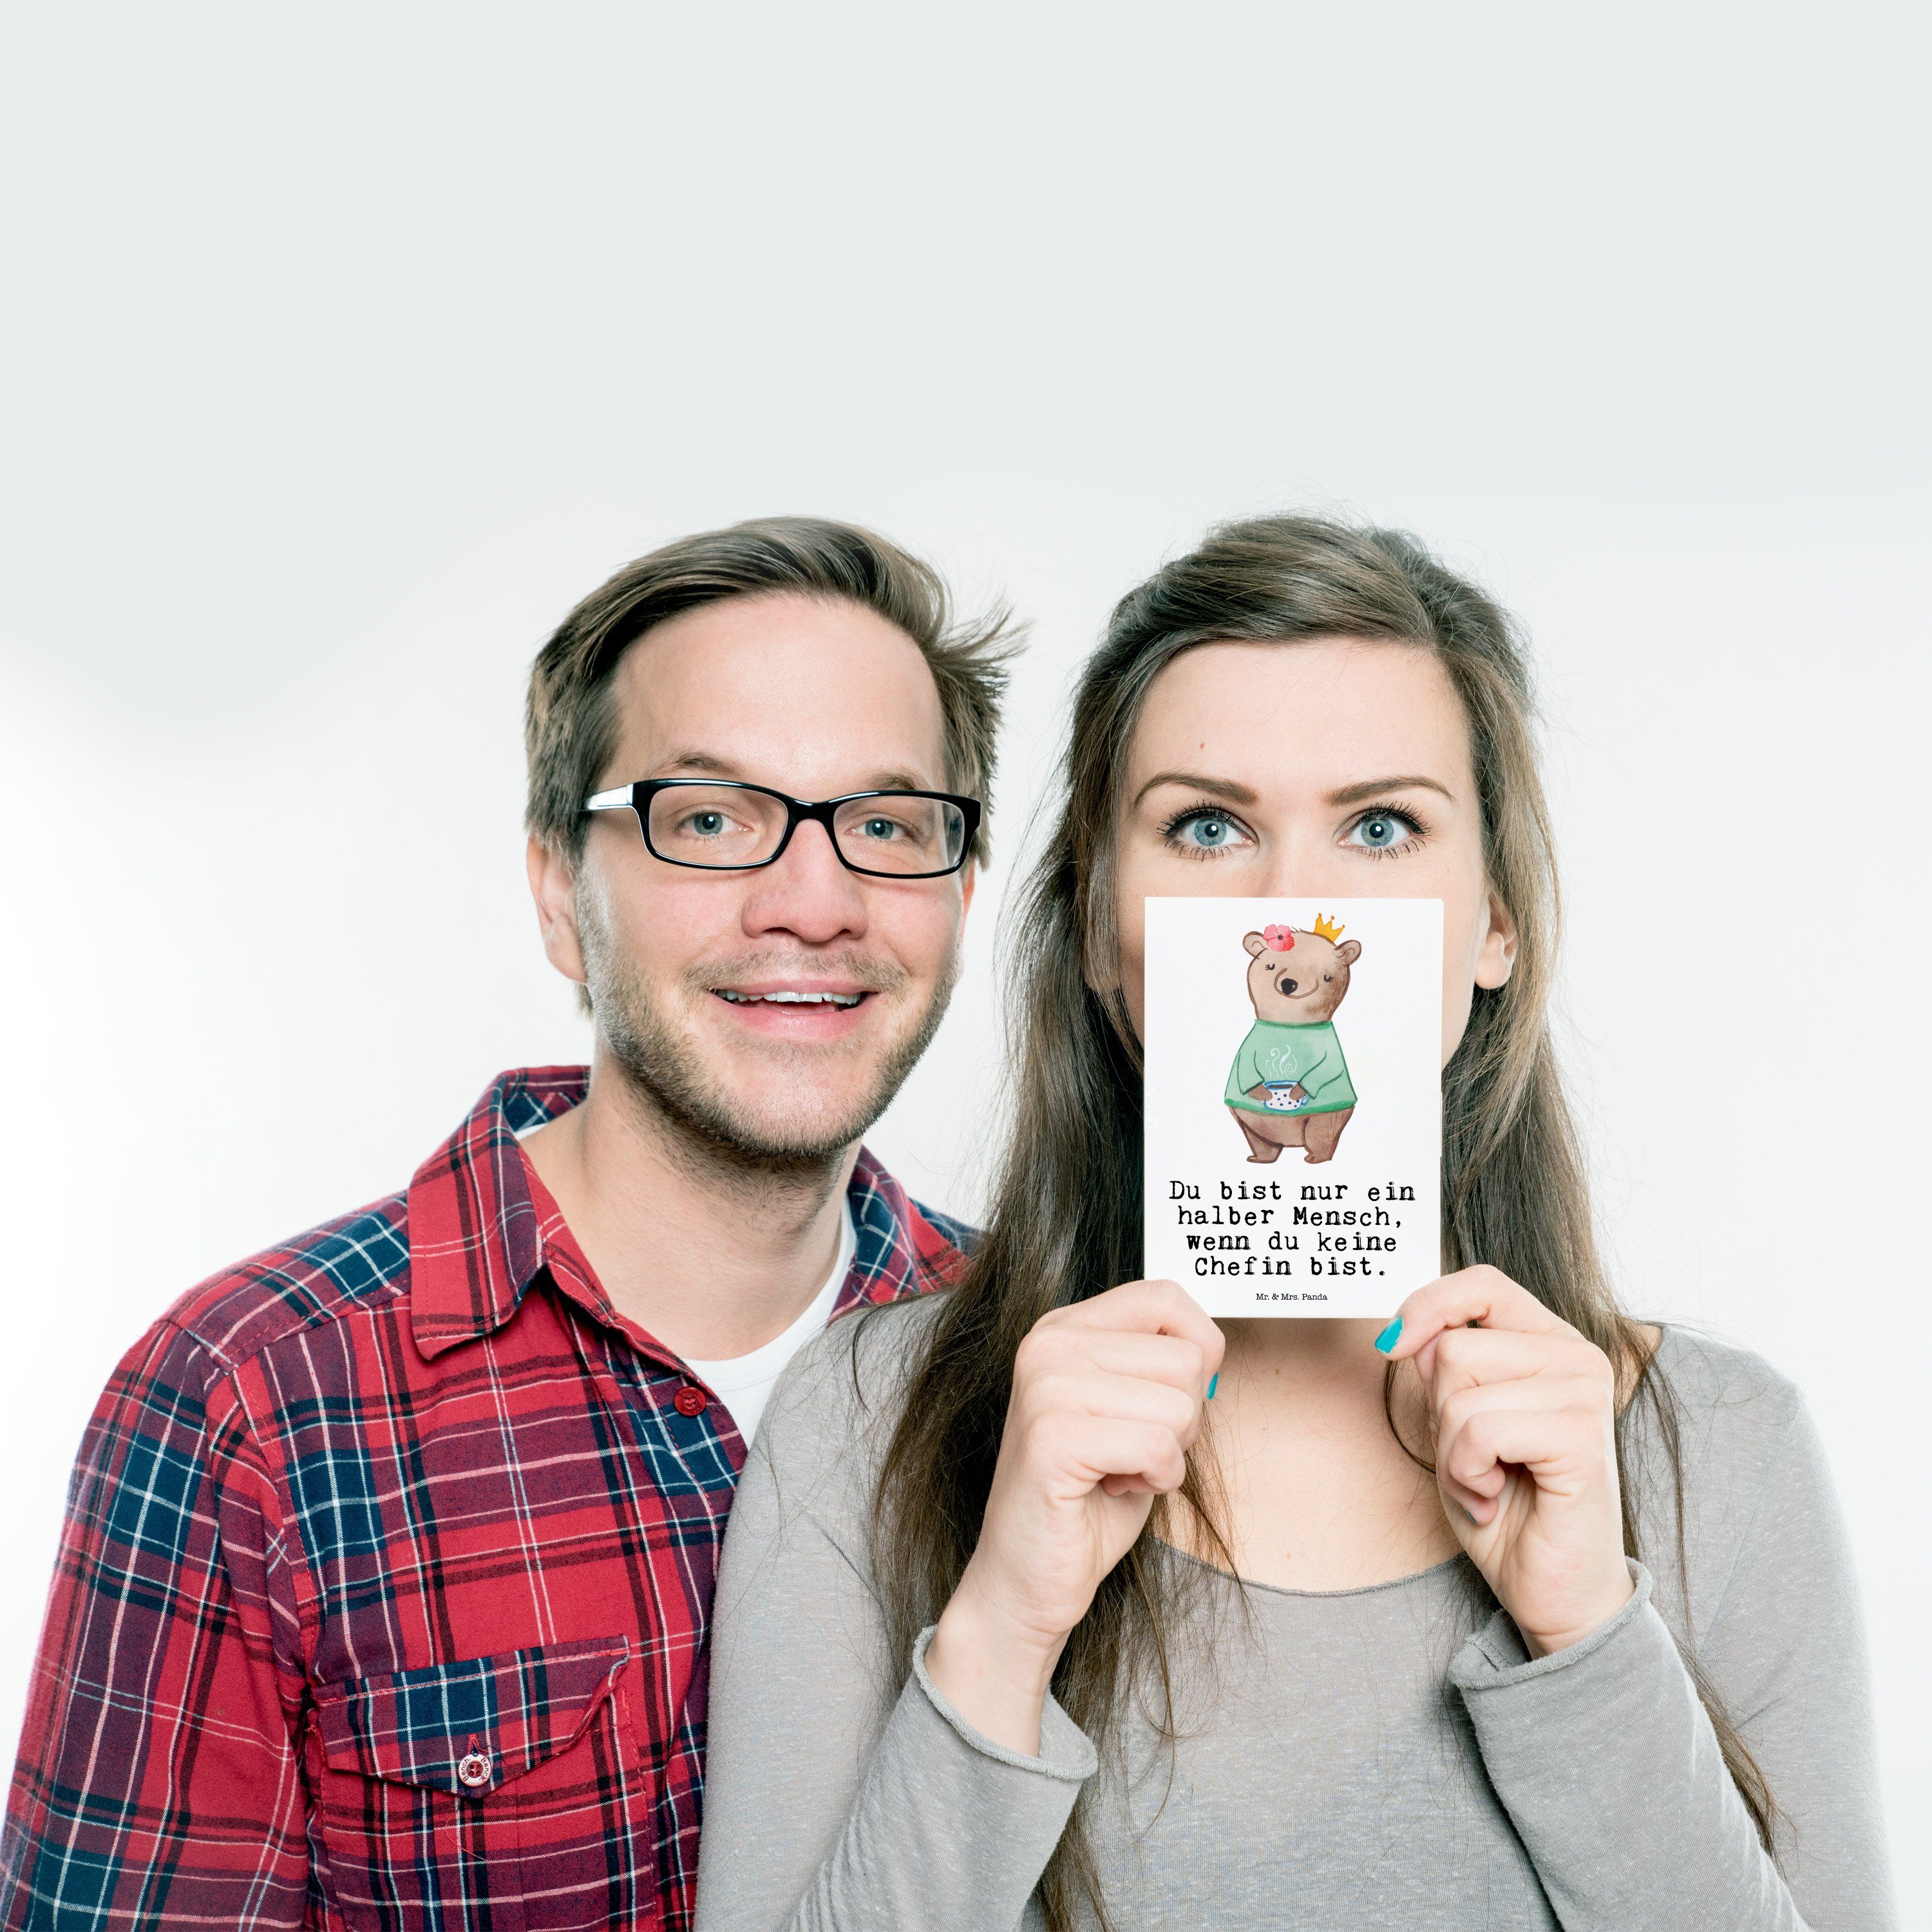 mit Weiß - Geschenk, Geburtstagskarte, Mr. Chefin - & Mrs. Grußkarte, Beruf Panda Herz Postkarte